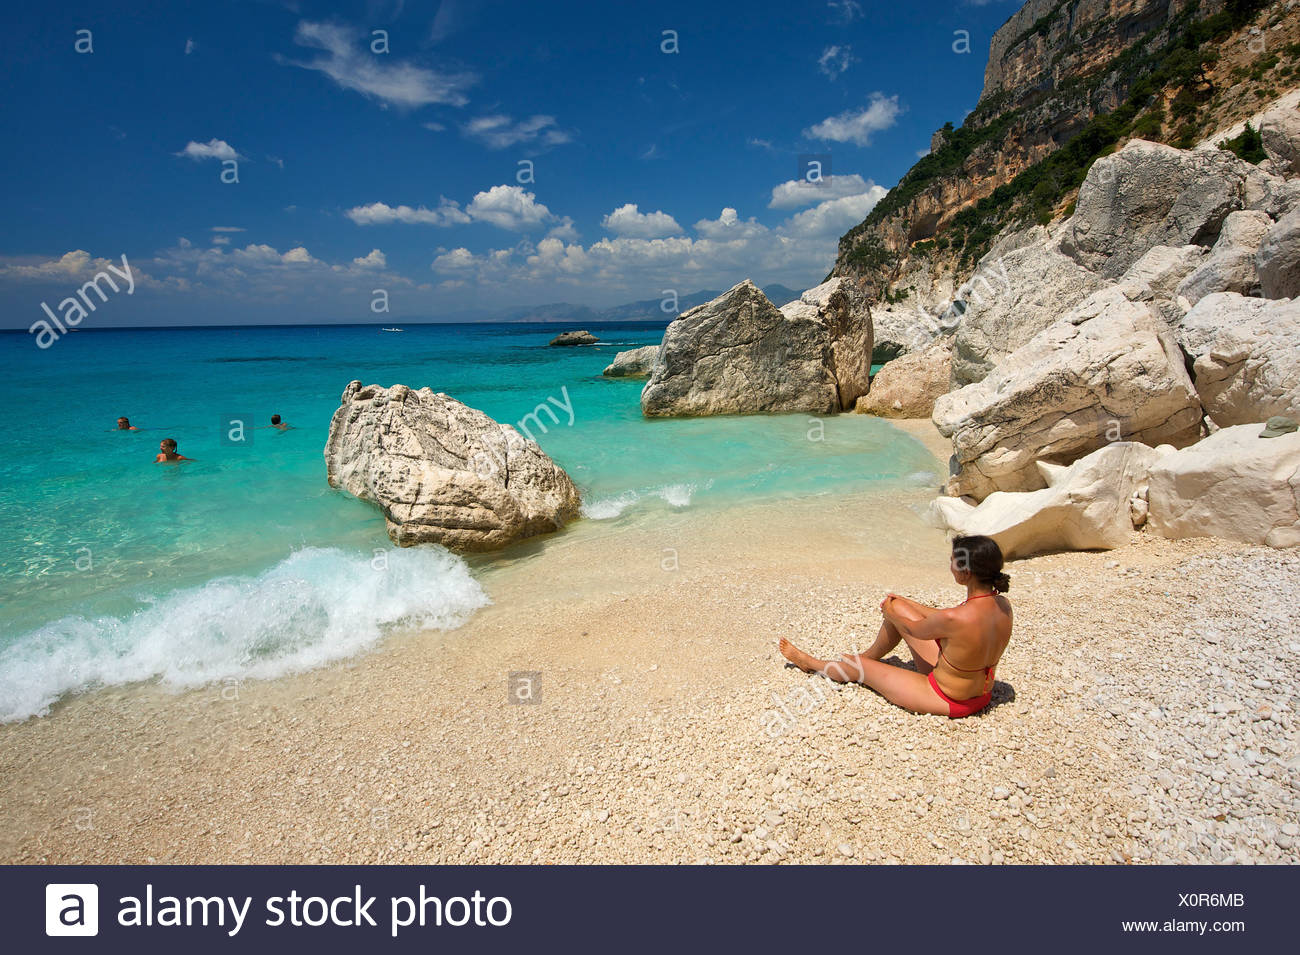 Sardinia Beaches People